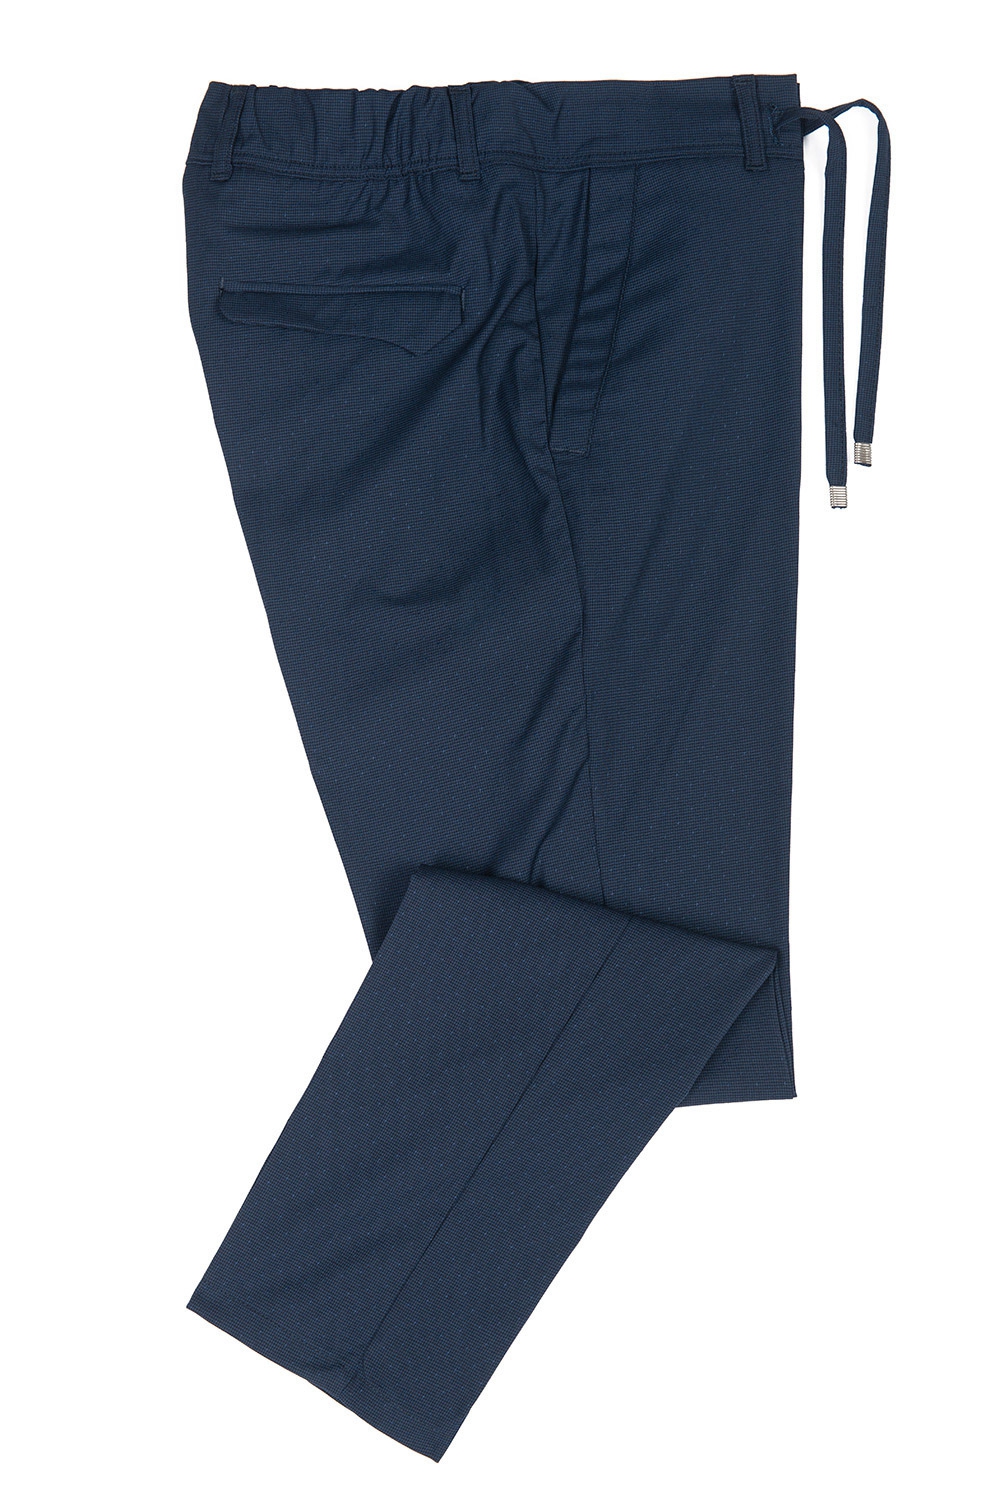 Pantaloni slim bleumarin uni  1